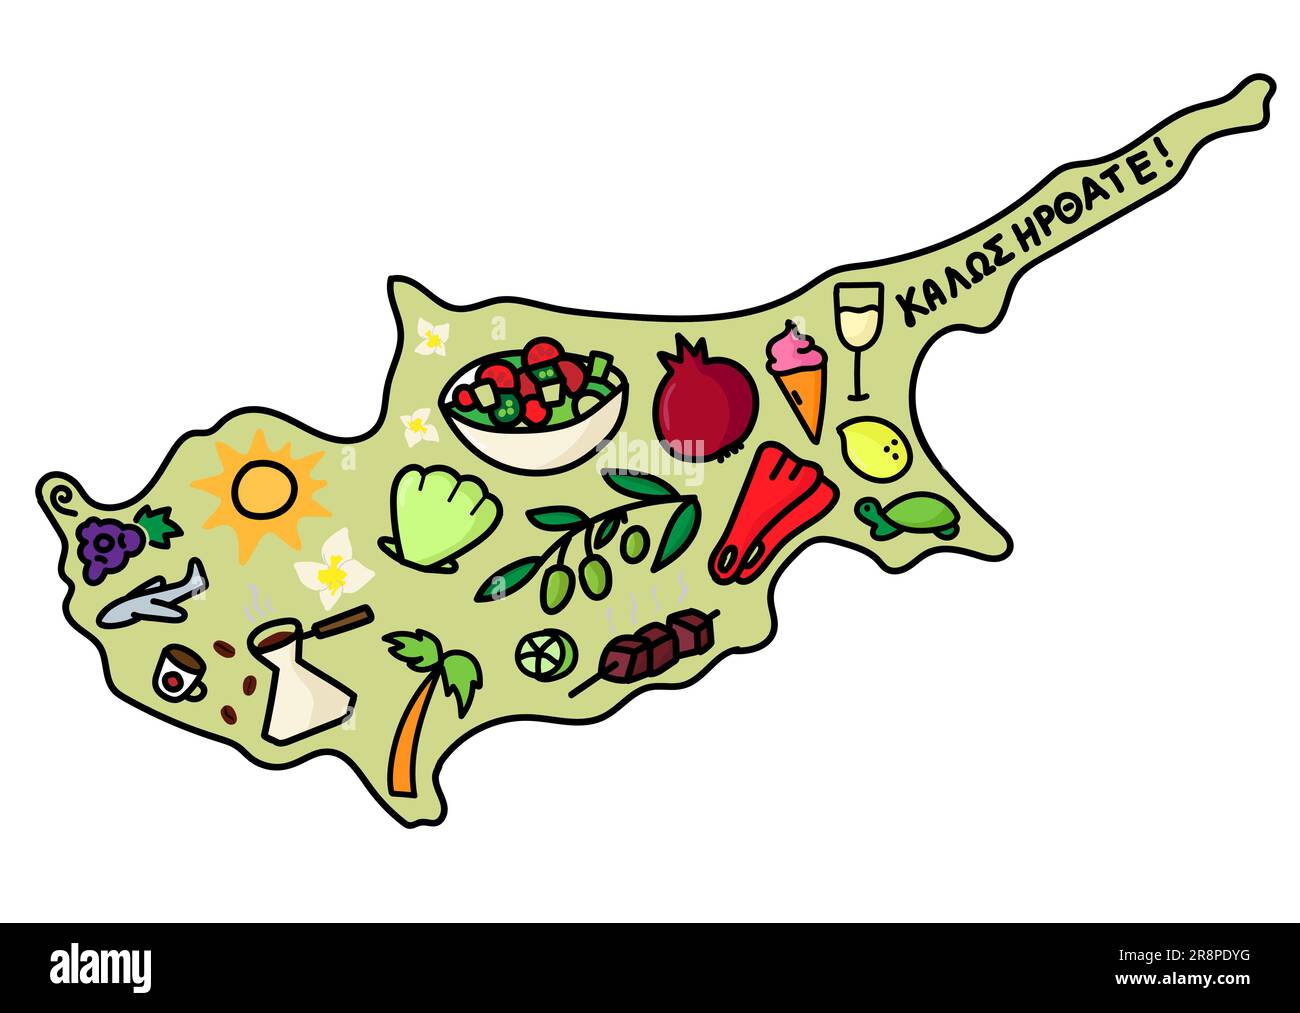 Illustrierte Karte von Zypern mit Symbolen und Wahrzeichen. Handgezeichnete Kritzelvektordarstellung, isoliert in Weiß. Stock Vektor